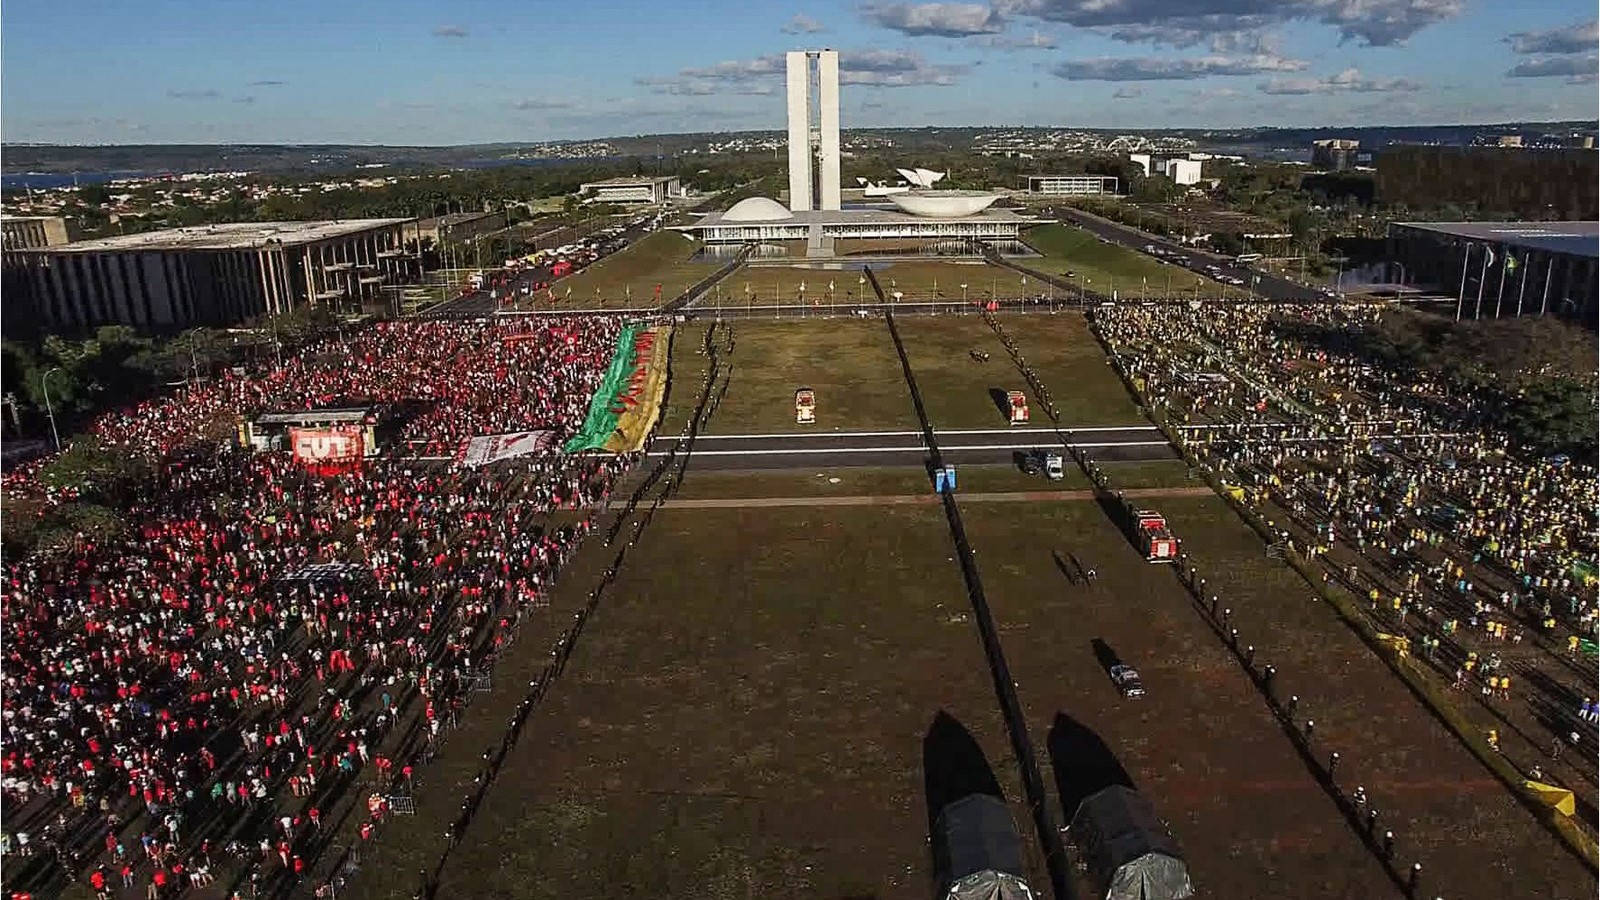 Brasileiro 'Democracia em vertigem' é indicado ao Oscar de melhor documentário